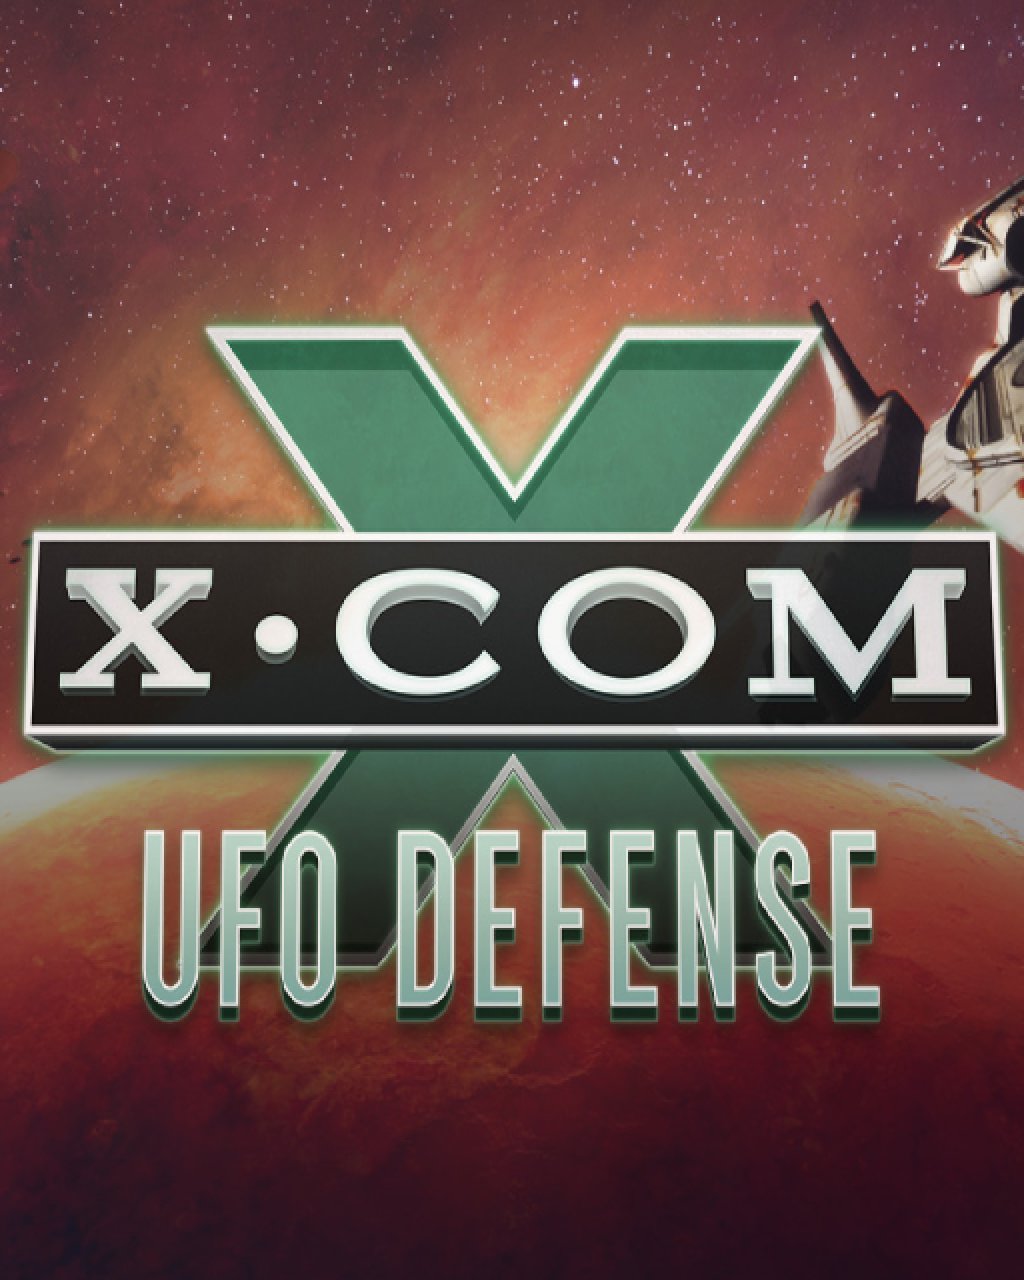 X-COM UFO Defense